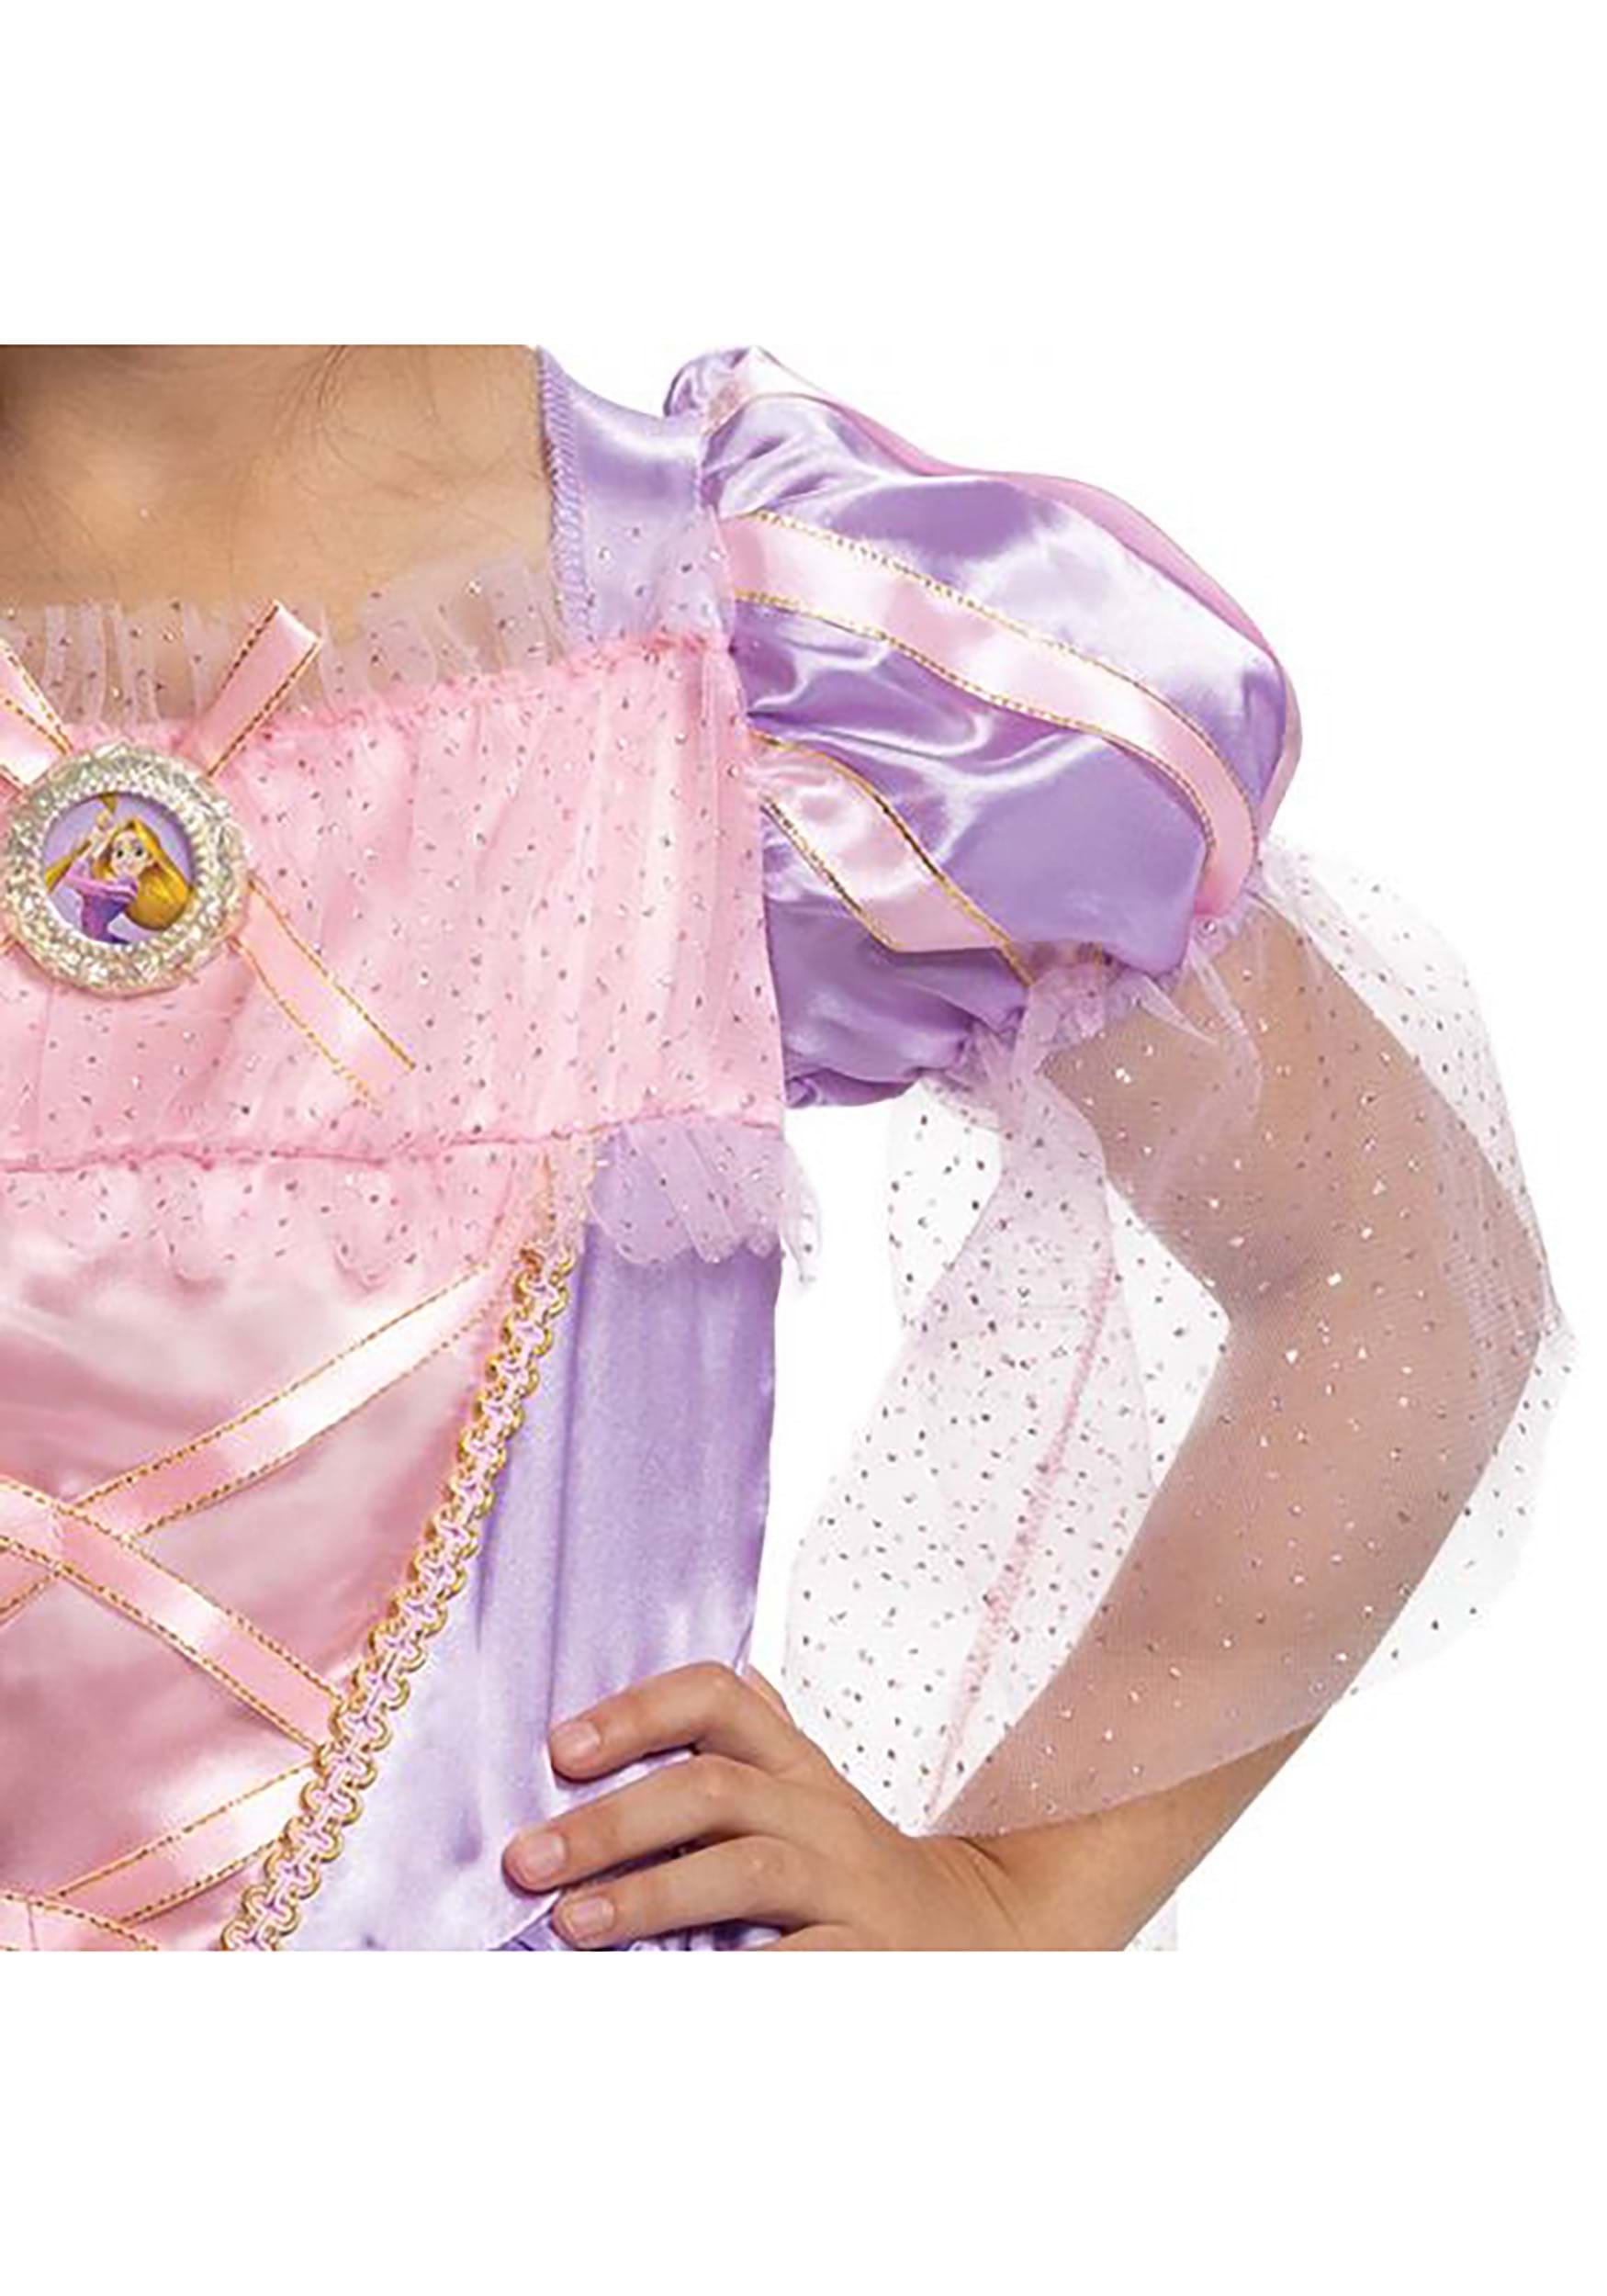 Tangled Deluxe Girl's Toddler Repunzel Costume